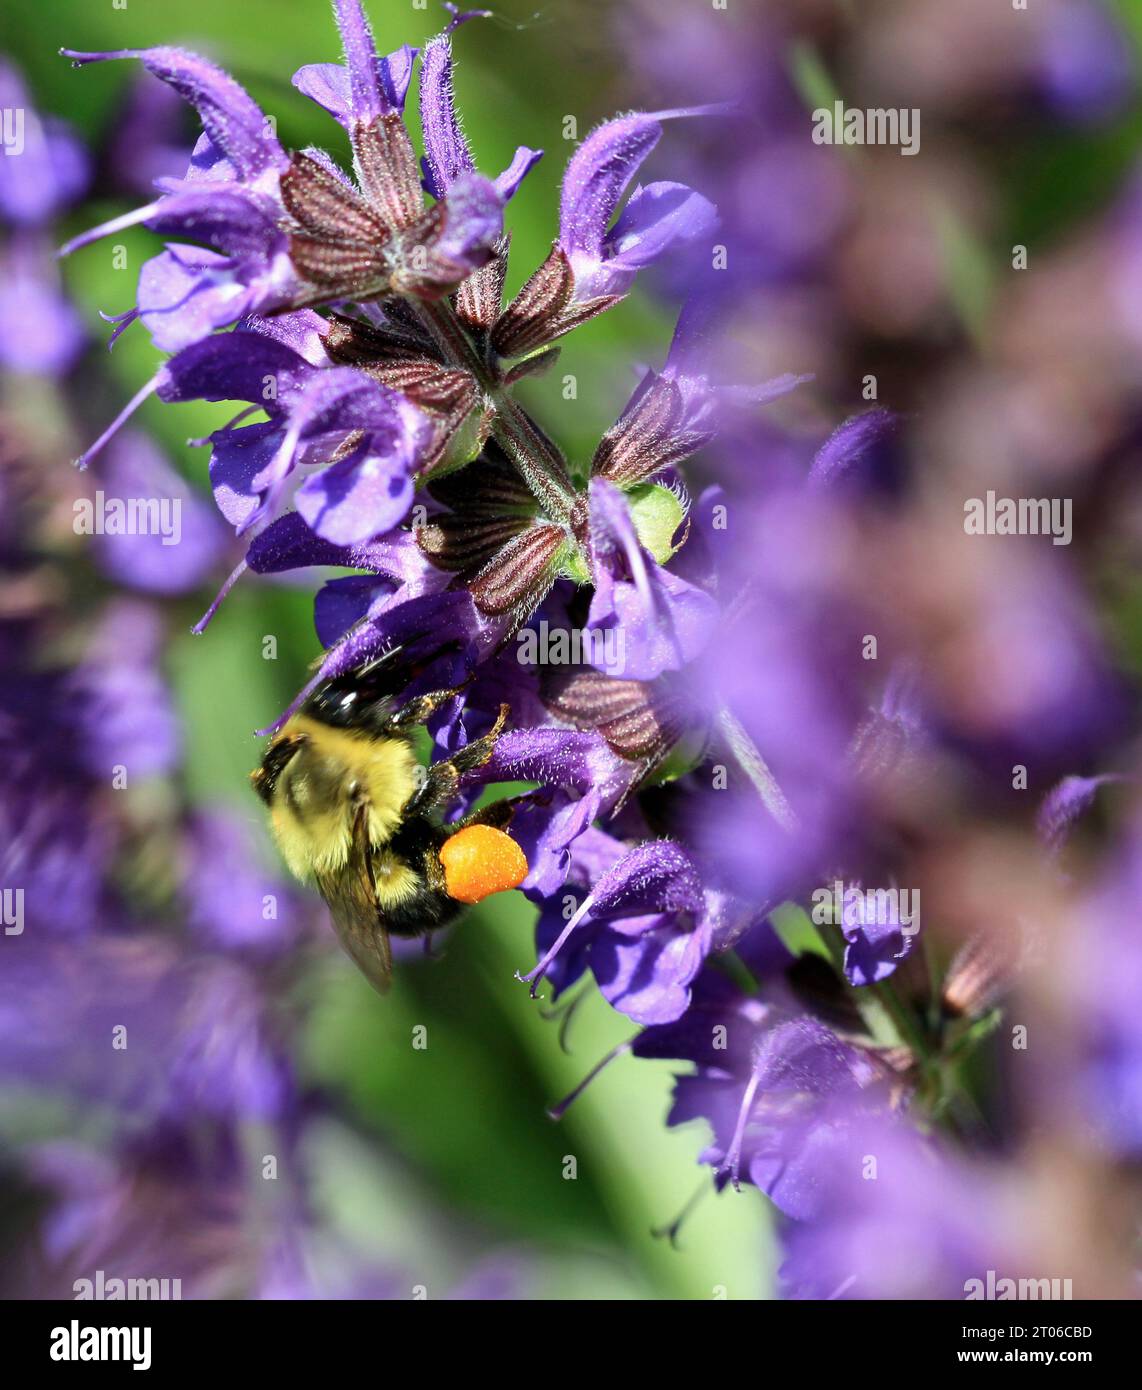 Bourdon commun femelle de l'est (Bombus impatiens) avec des paniers à pollen se nourrissant de nectar de salvia 'May Night' dans un jardin de la Nouvelle-Angleterre Banque D'Images